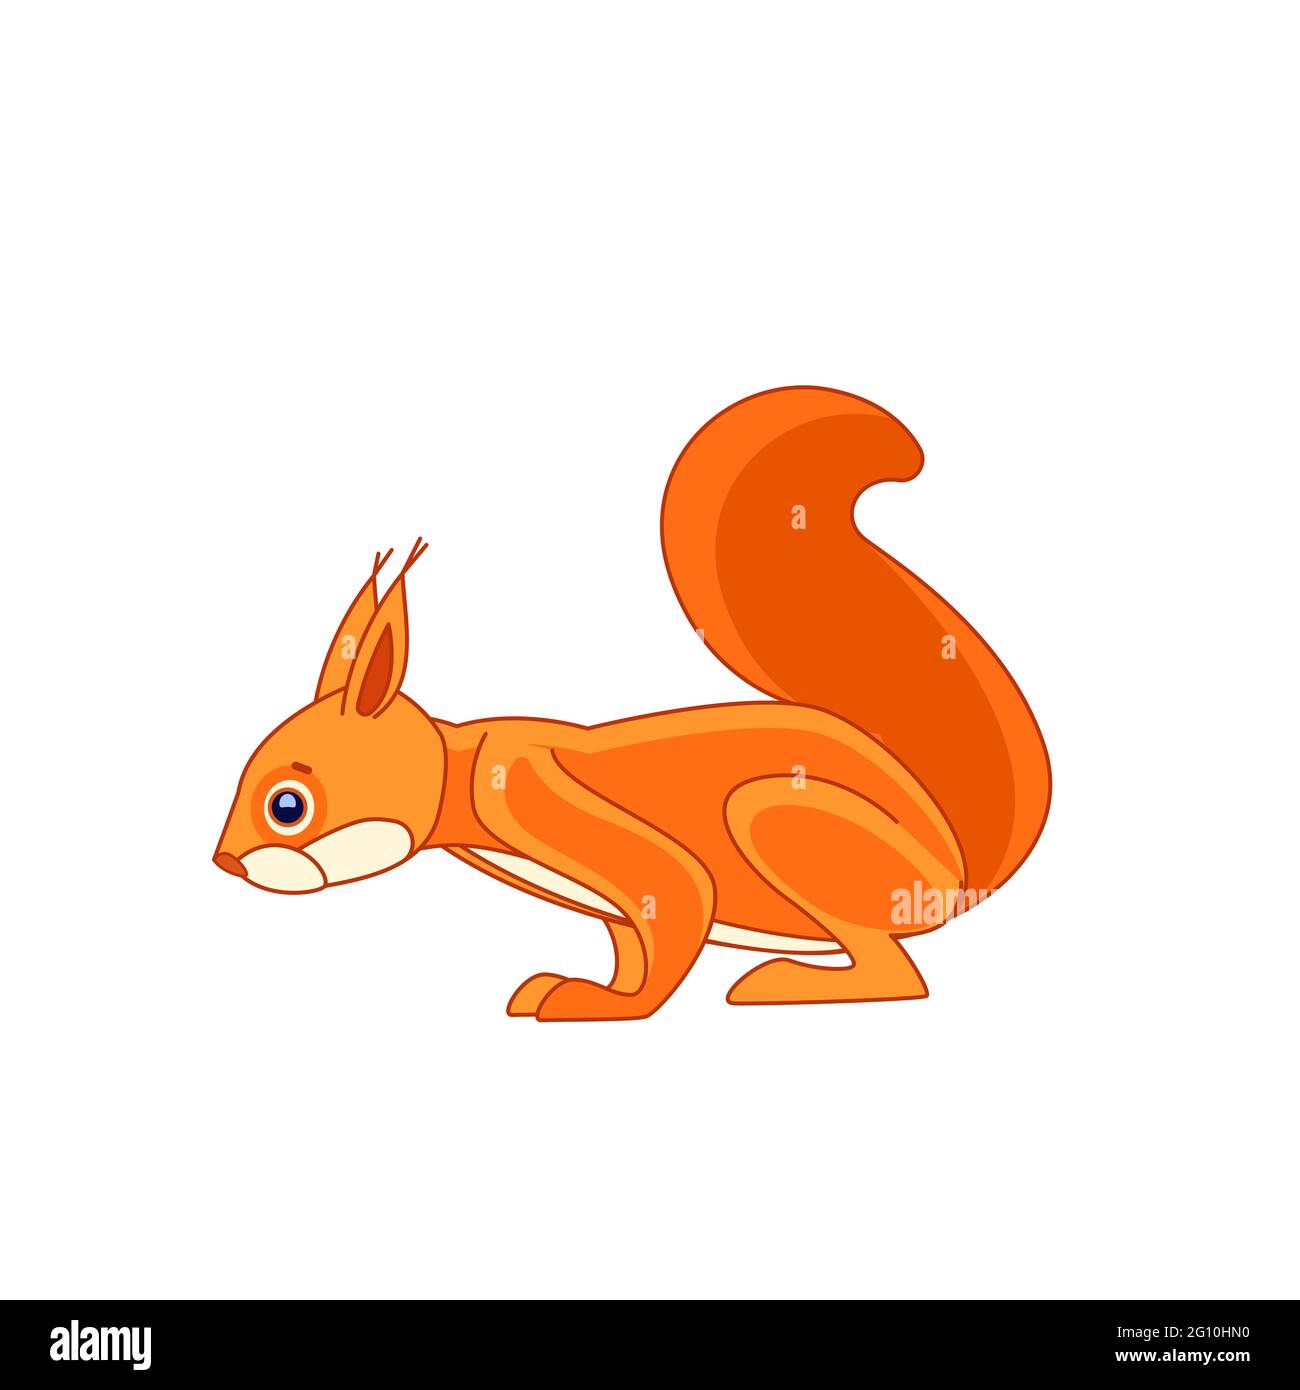 Eichhörnchen beobachtet neugierig von oben. Cartoon-Charakter eines Nagetier Säugetier Tier. Ein wildes Waldgeschöpf mit orangefarbenem Fell. Seitenansicht. Vektor flach Stock Vektor